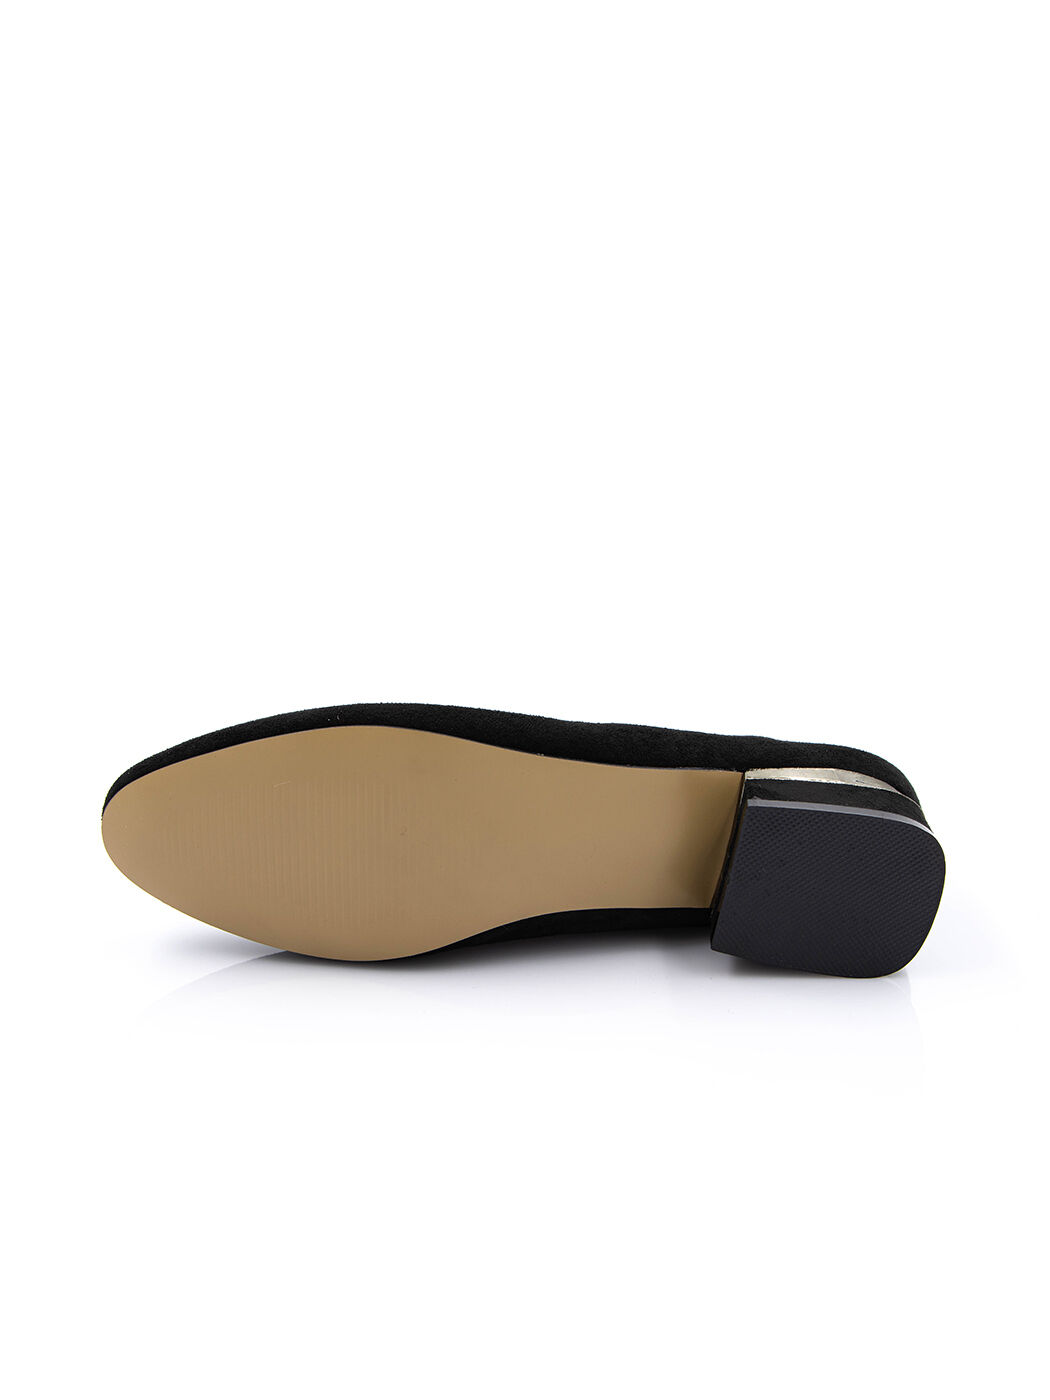 Туфли женские черные экозамша каблук устойчивый демисезон от производителя 3M вид 2